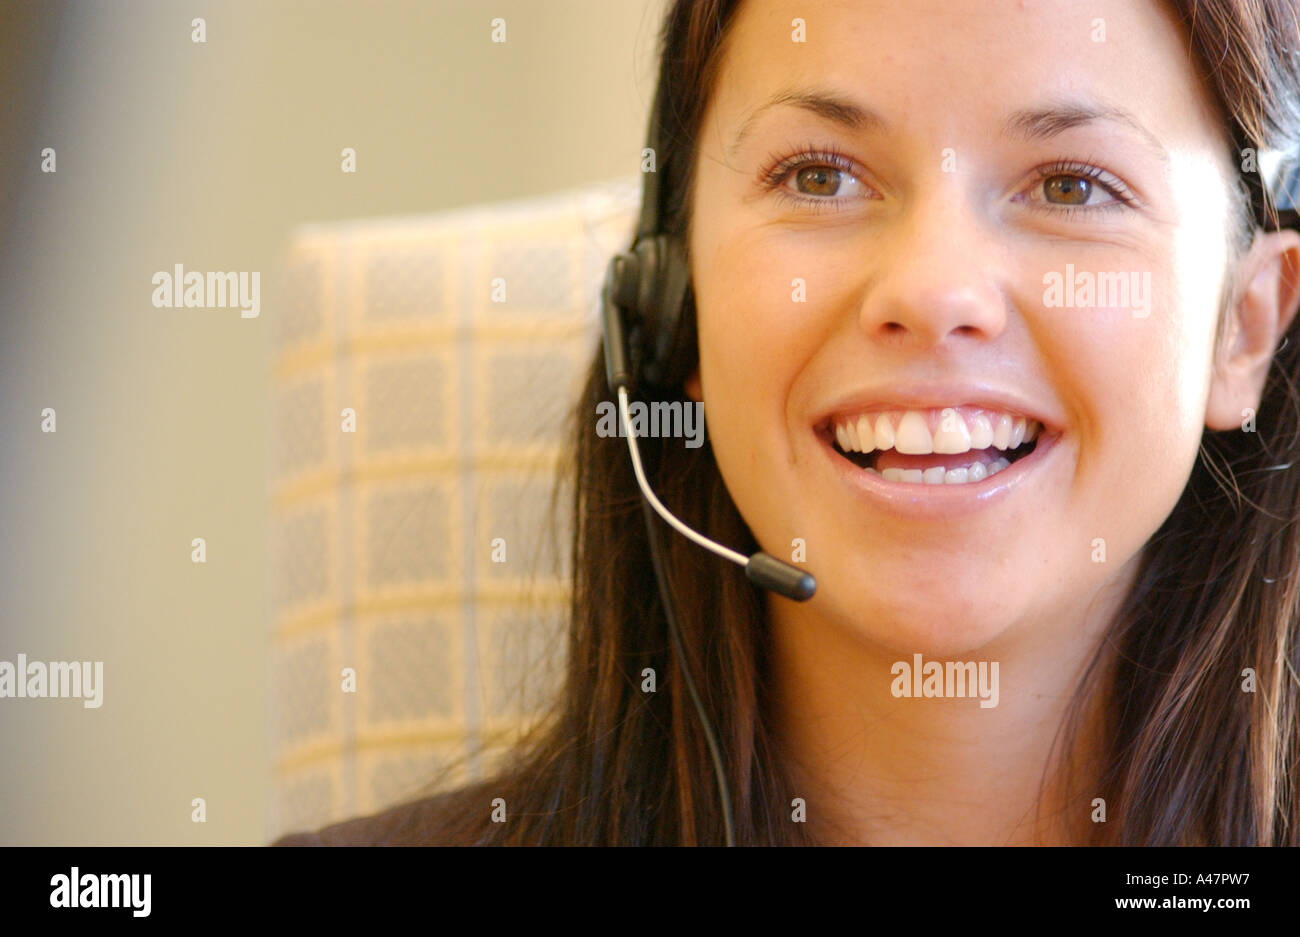 Image libre photo de la jolie brunette happy smiling call centre employee London UK Banque D'Images